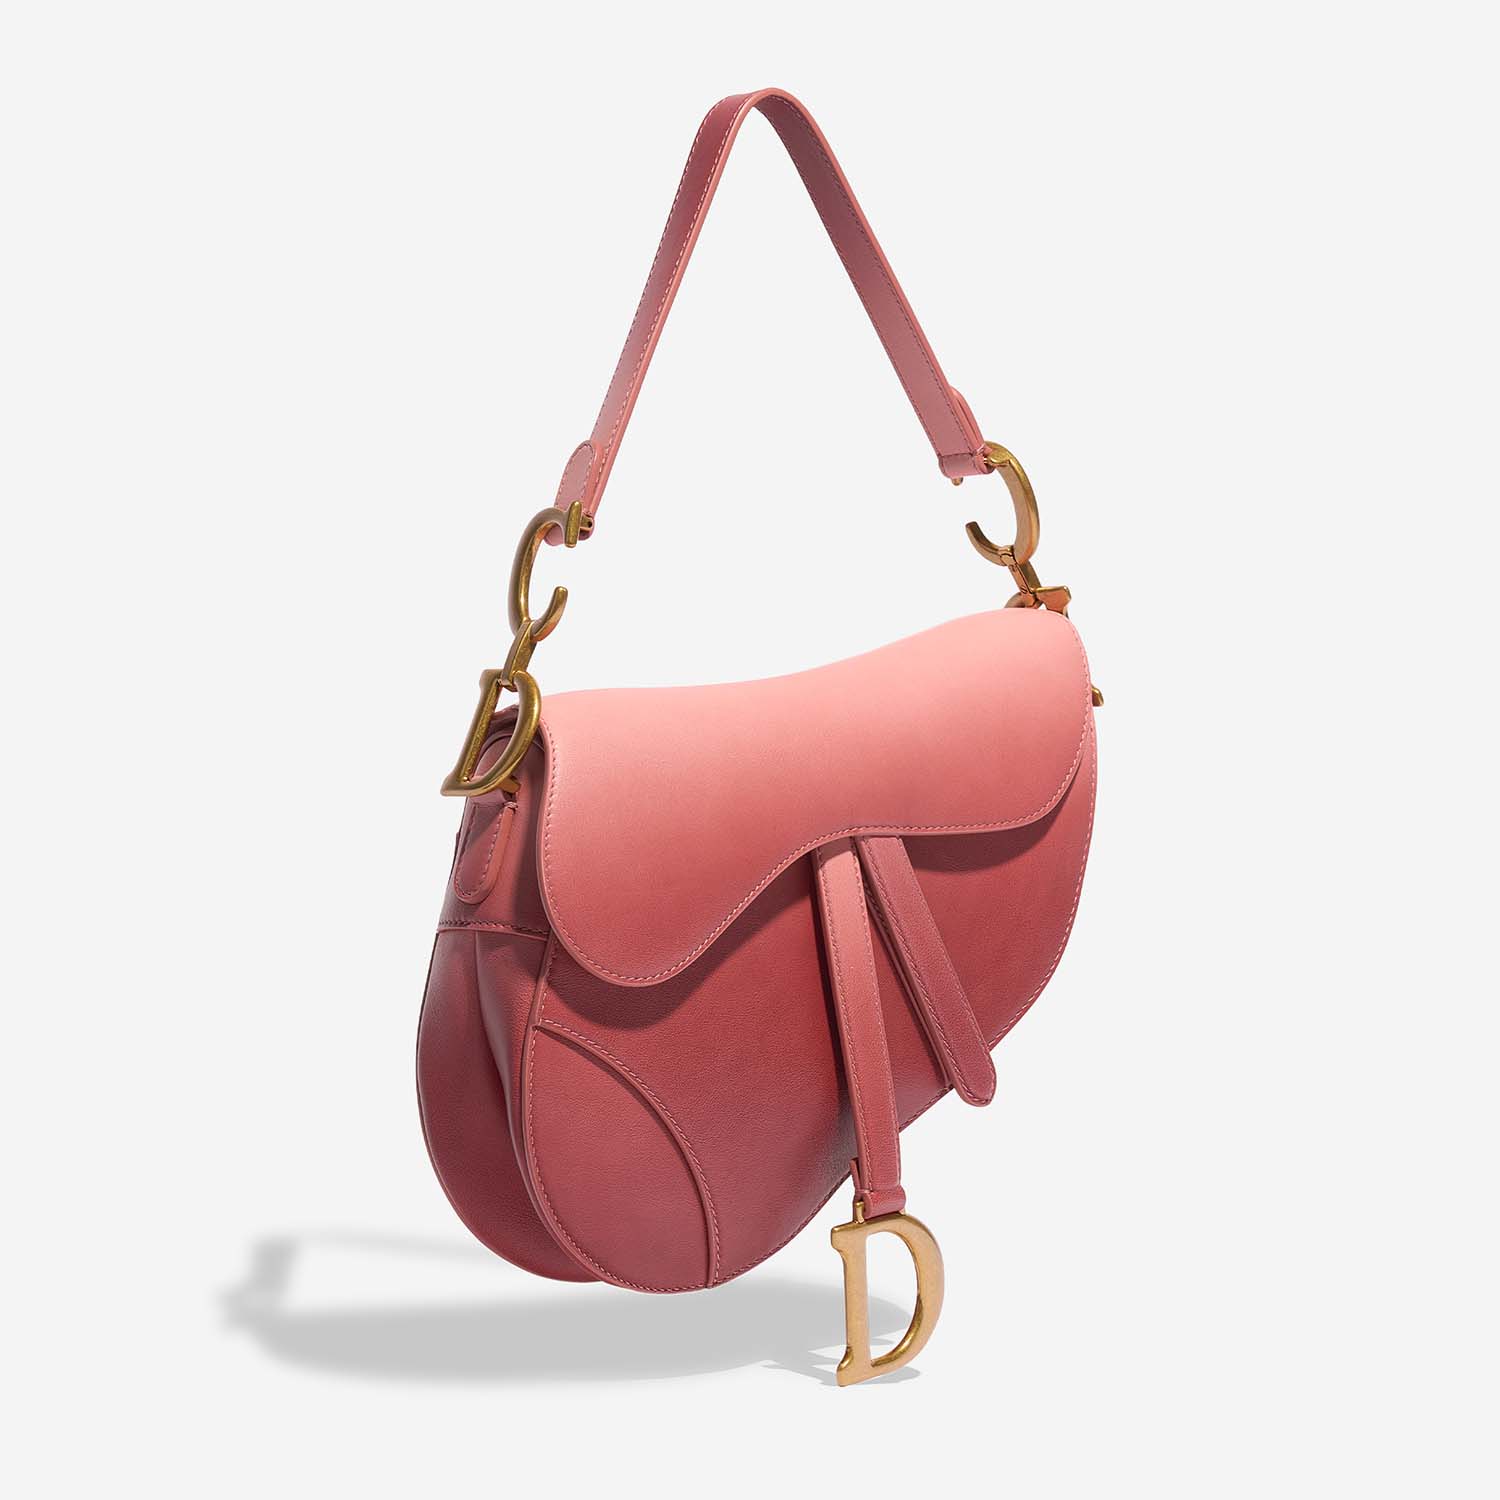 Dior Saddle Medium Pink Side Front | Verkaufen Sie Ihre Designer-Tasche auf Saclab.com